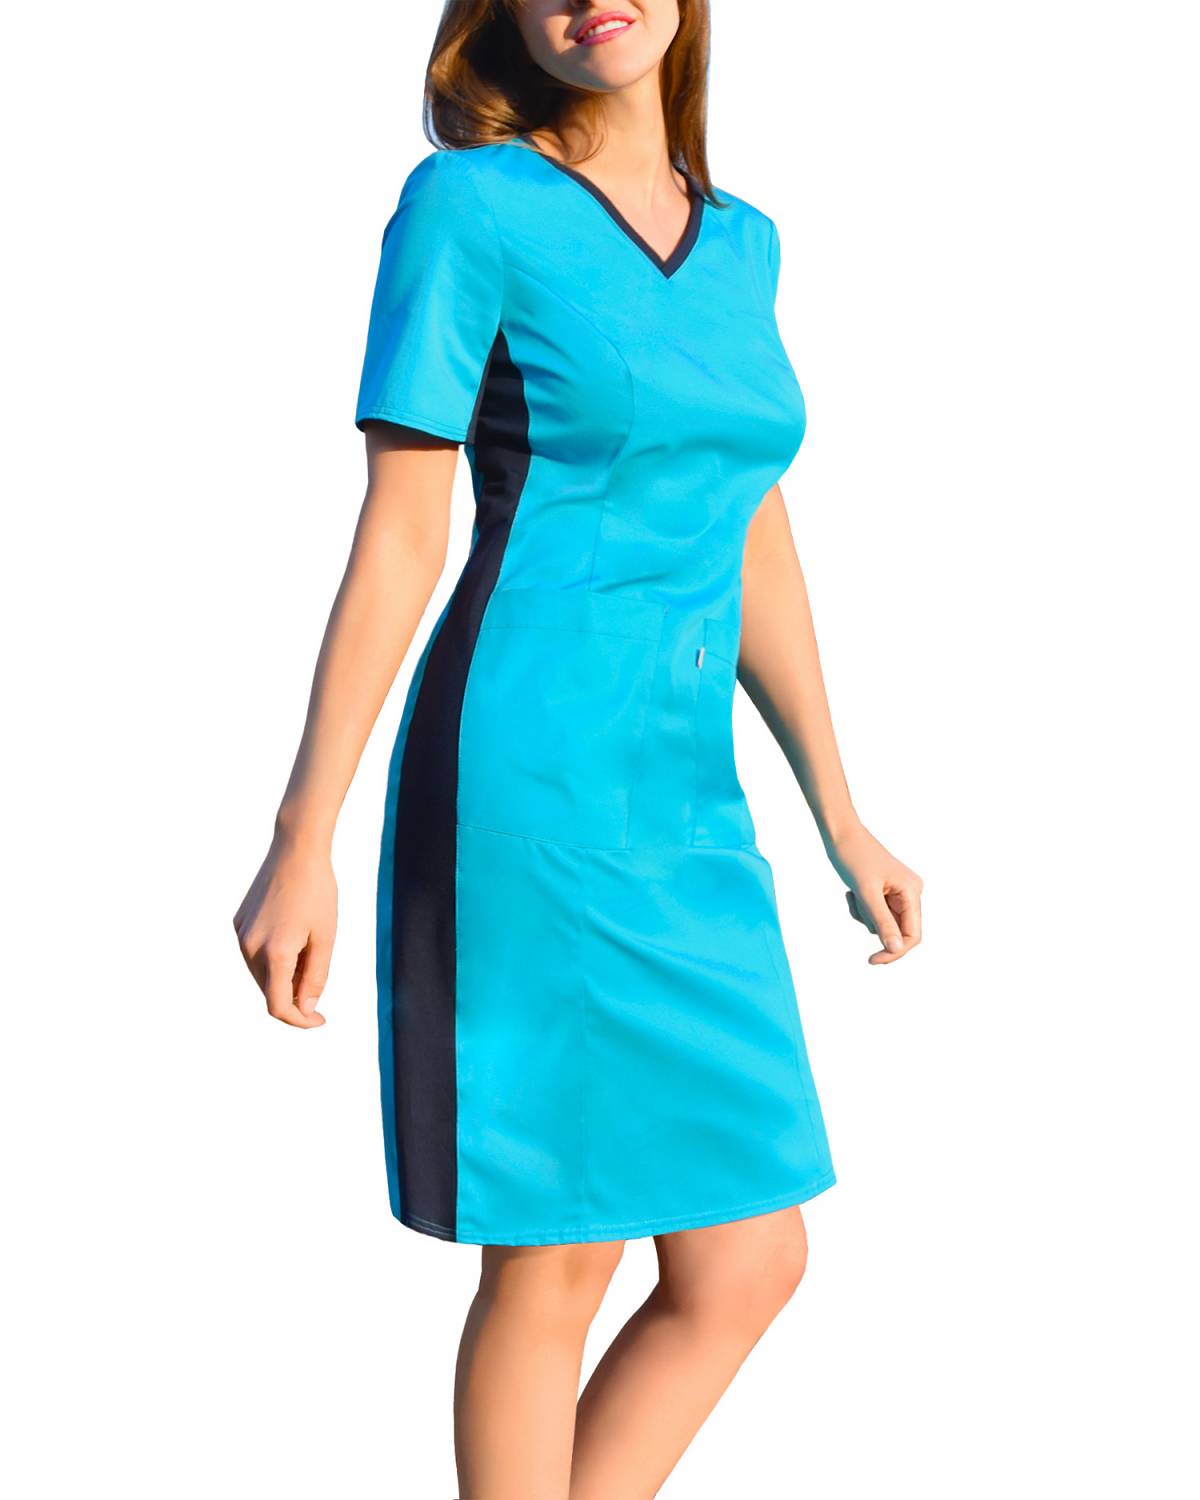 Sukienka medyczna turkusowa, z elastycznym ściągaczem w boku (SKE1-T)